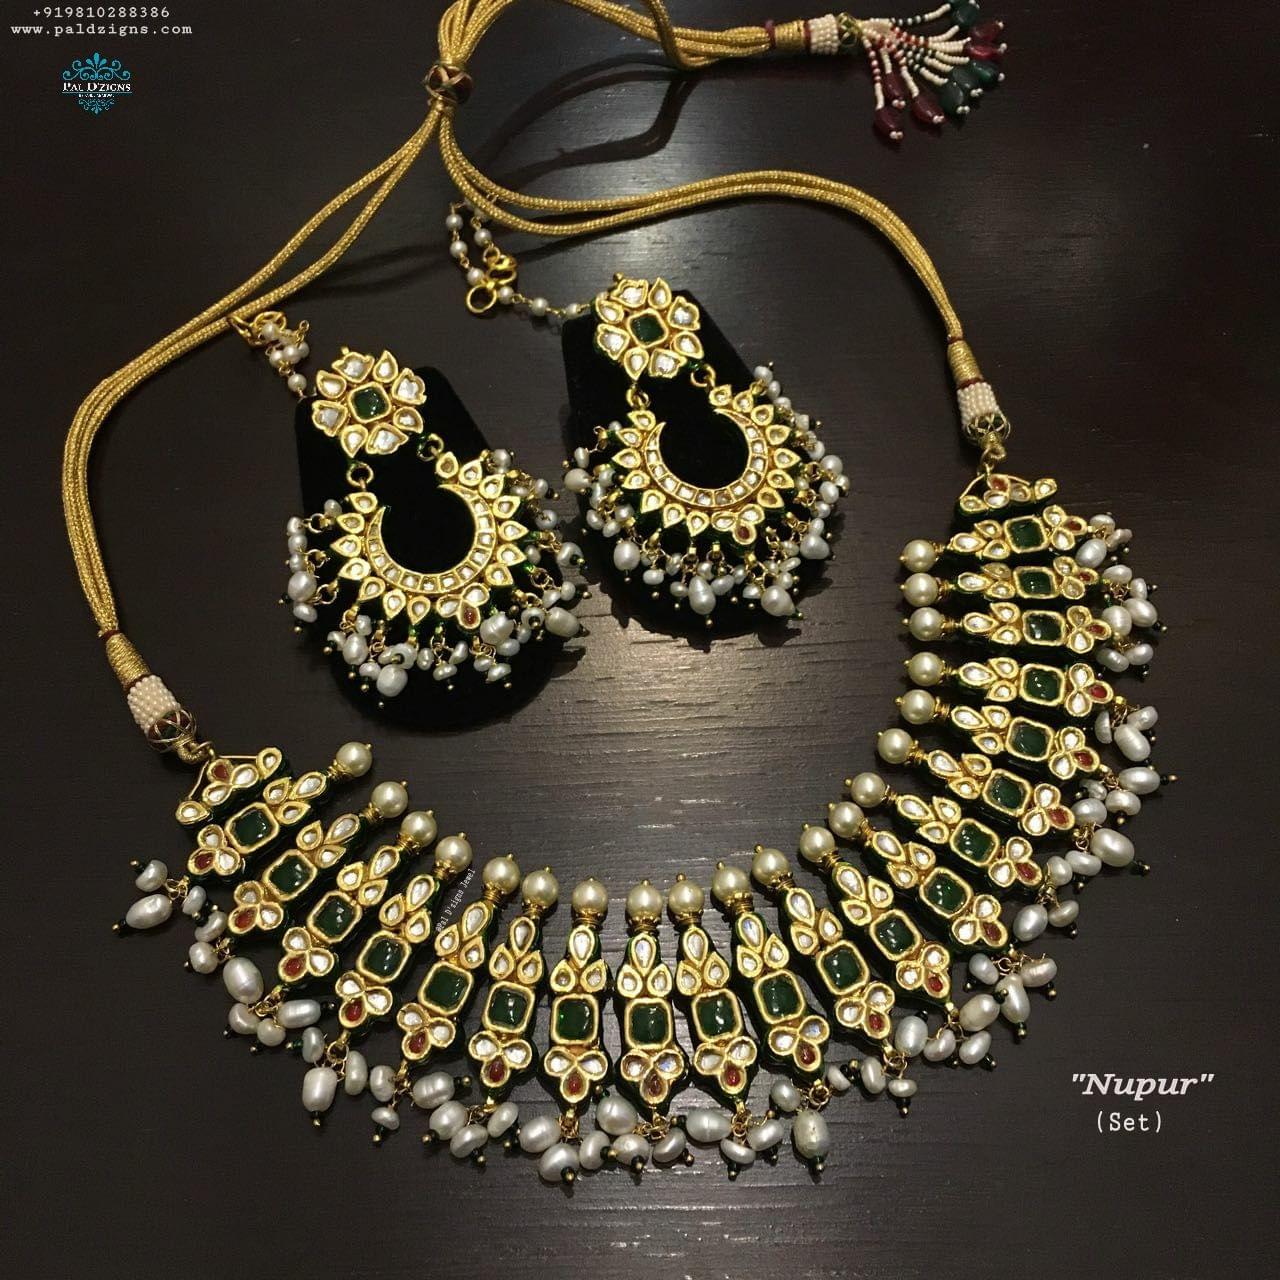 Nupur Necklace set